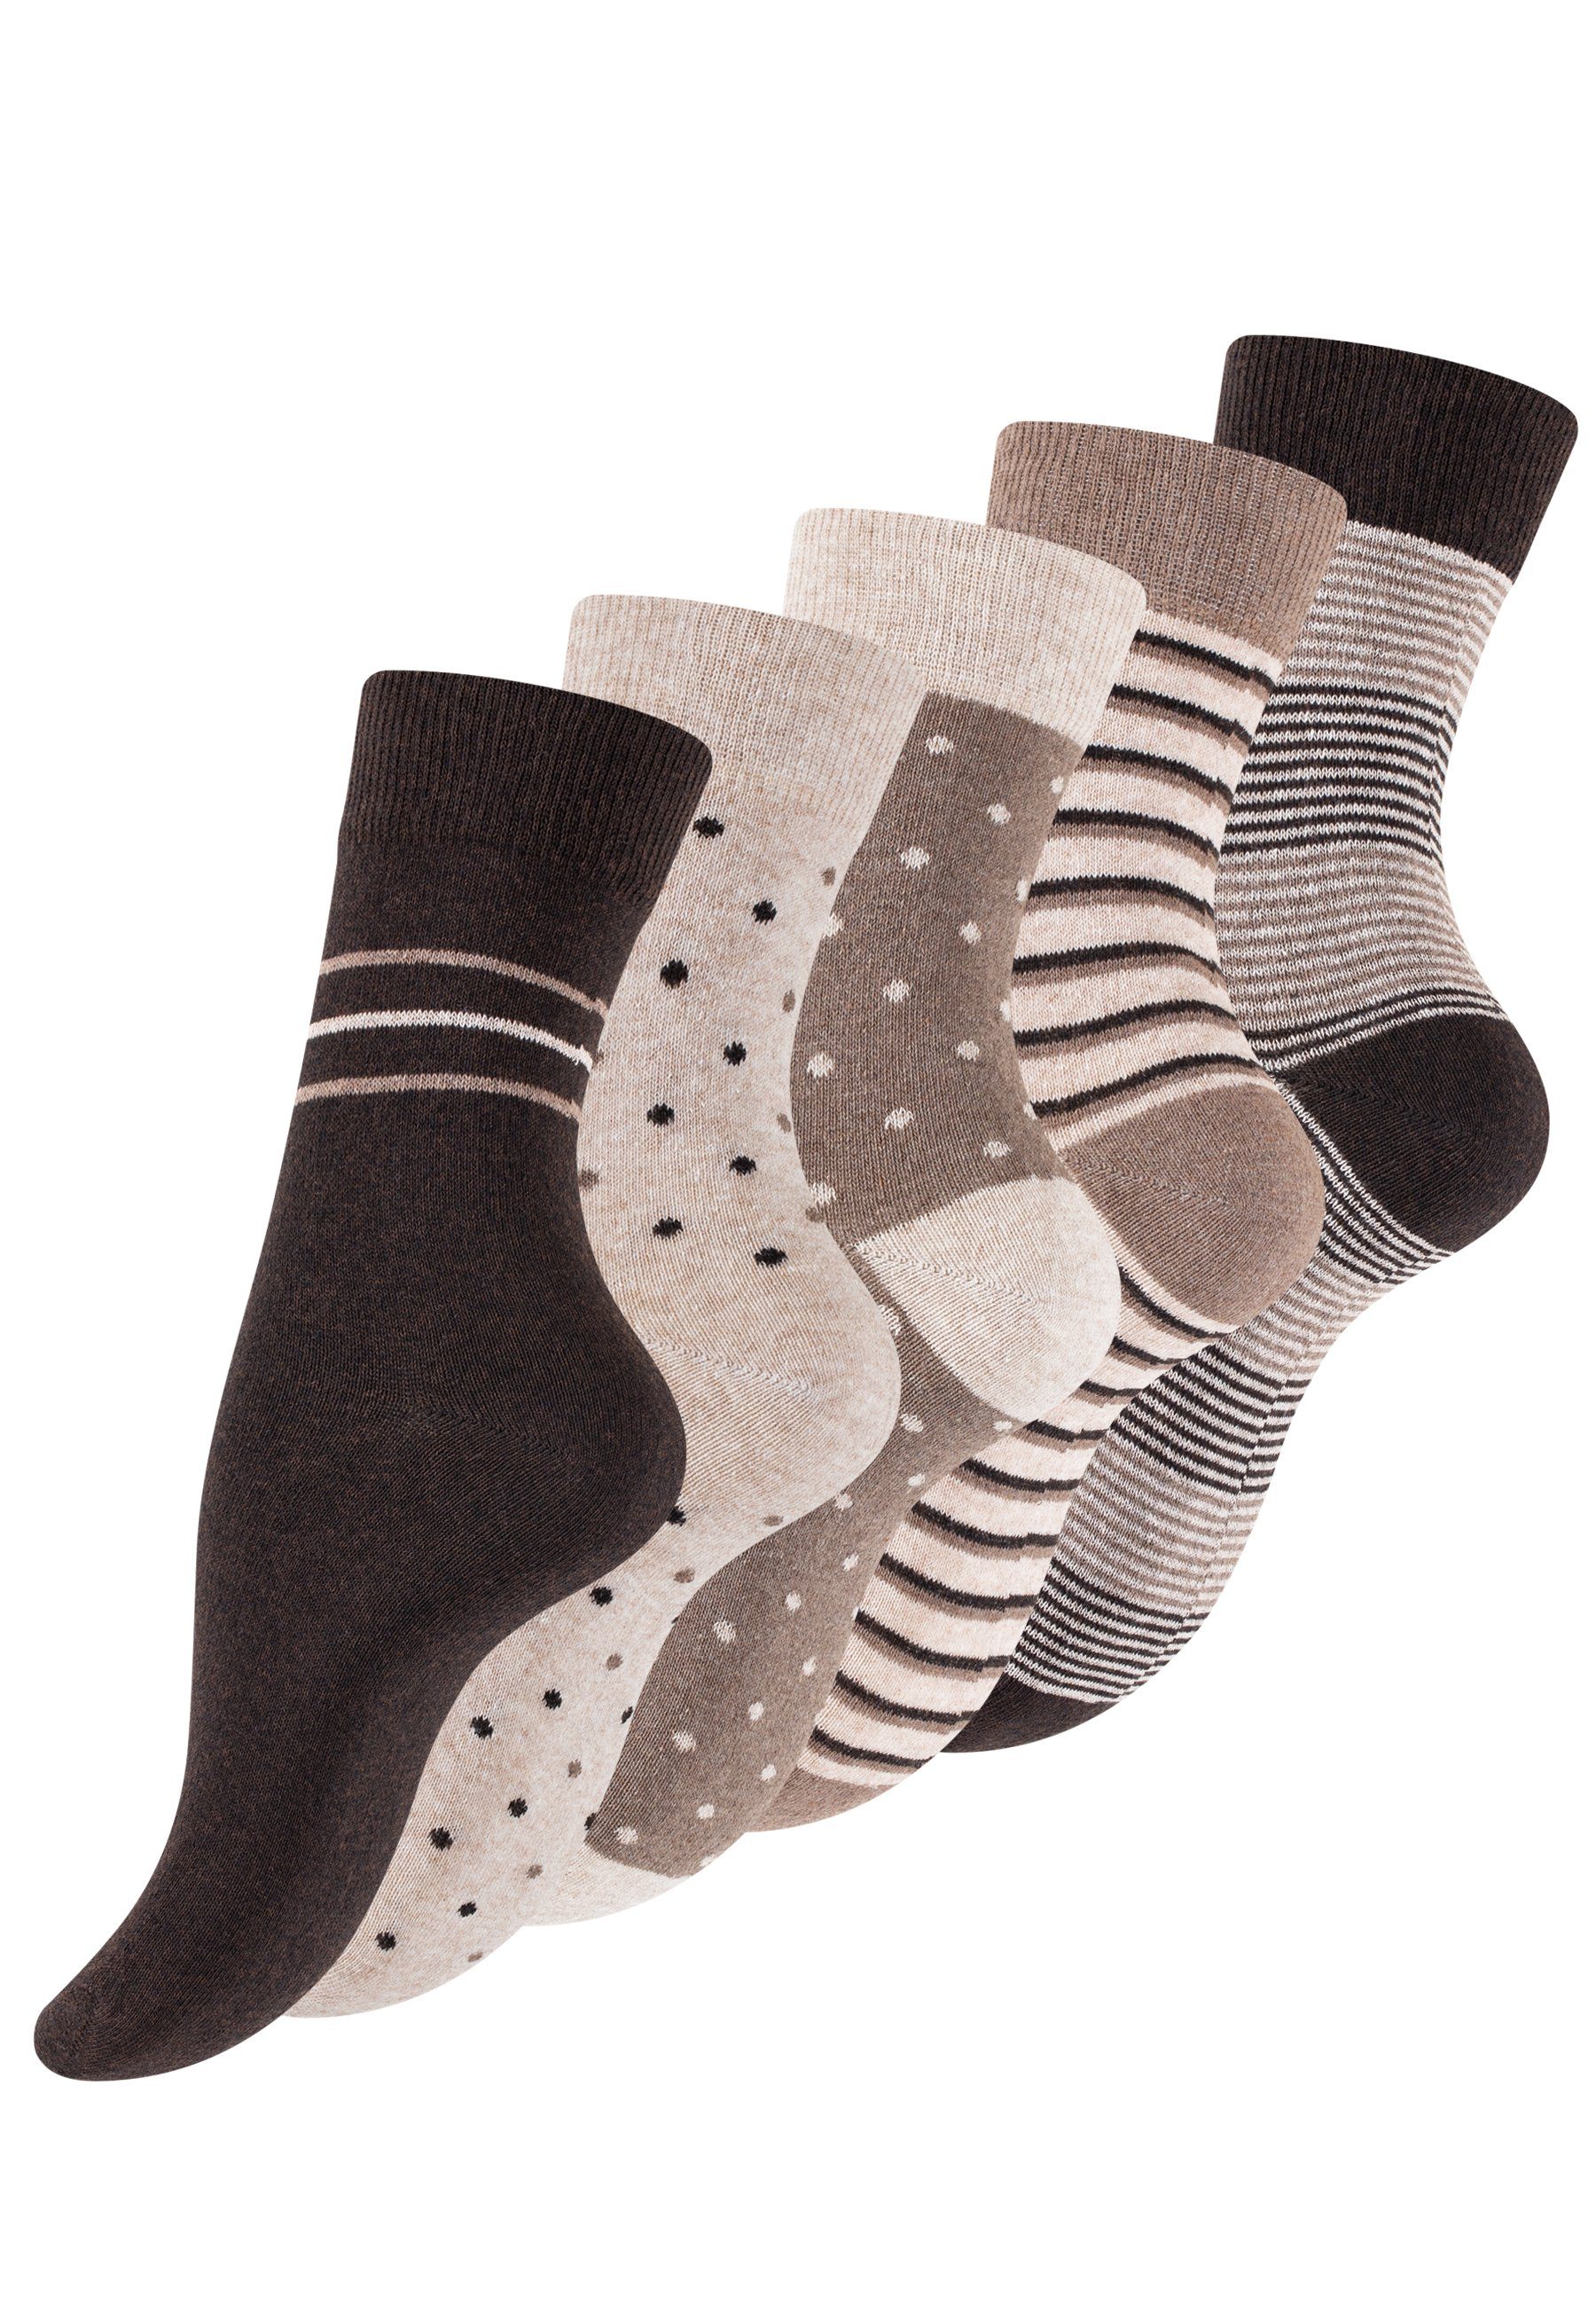 in Socken Creation® Baumwollqualität (10-Paar) Vincent braun/beige angenehmer